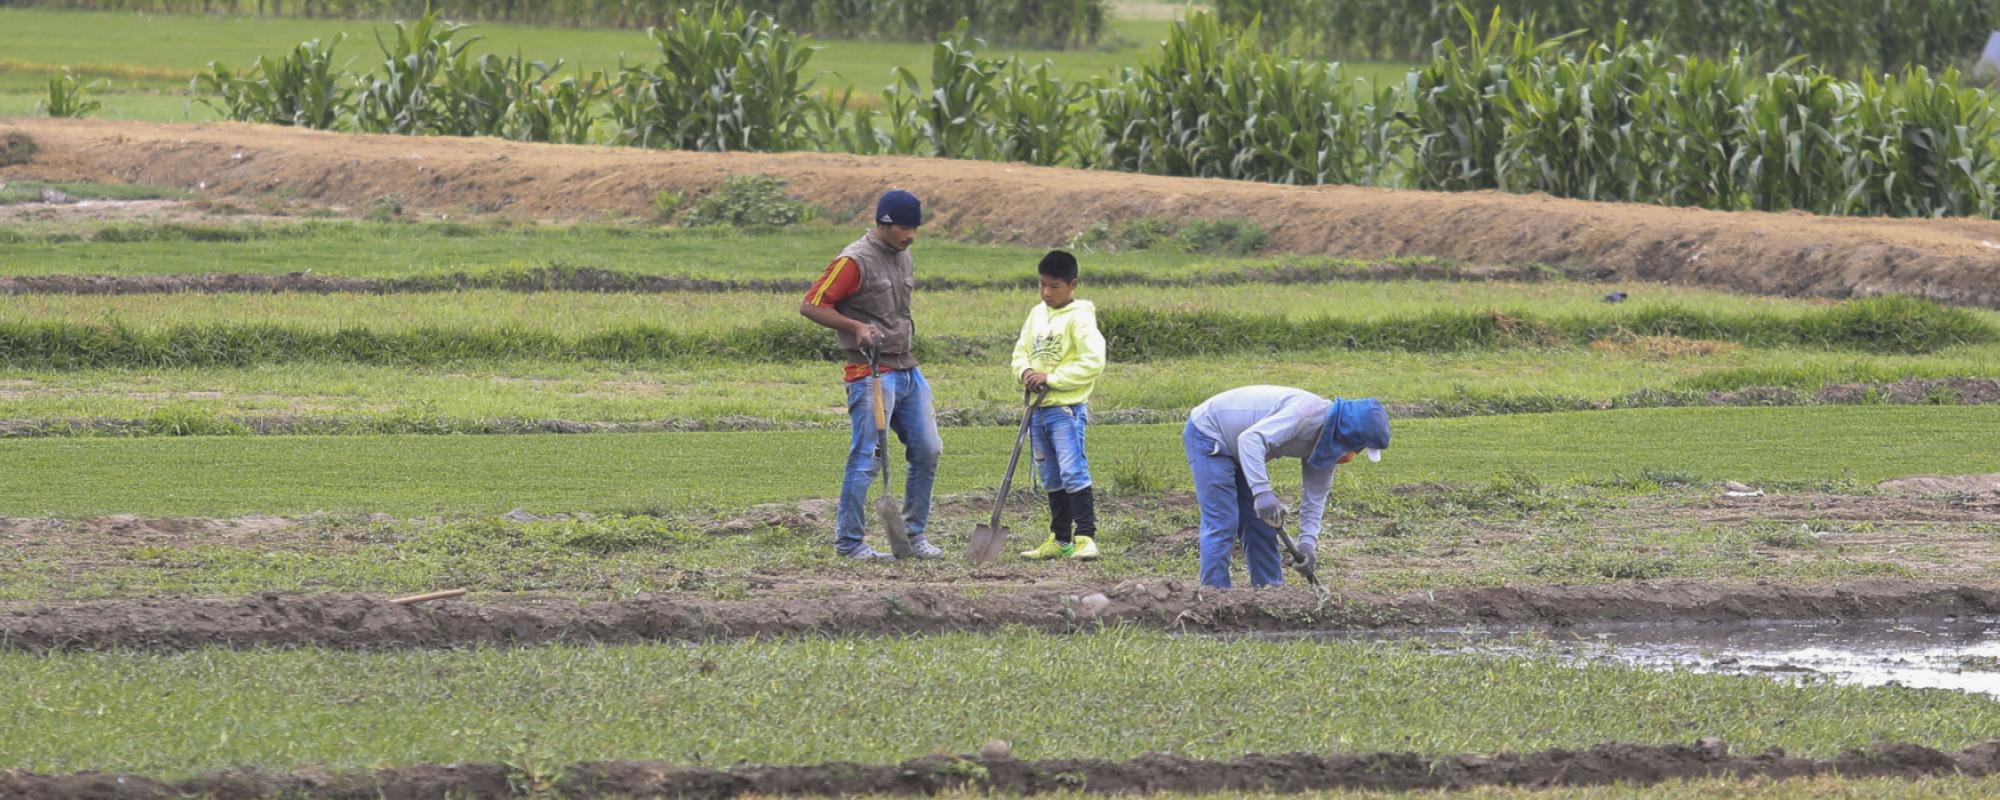 boys working in the fields 